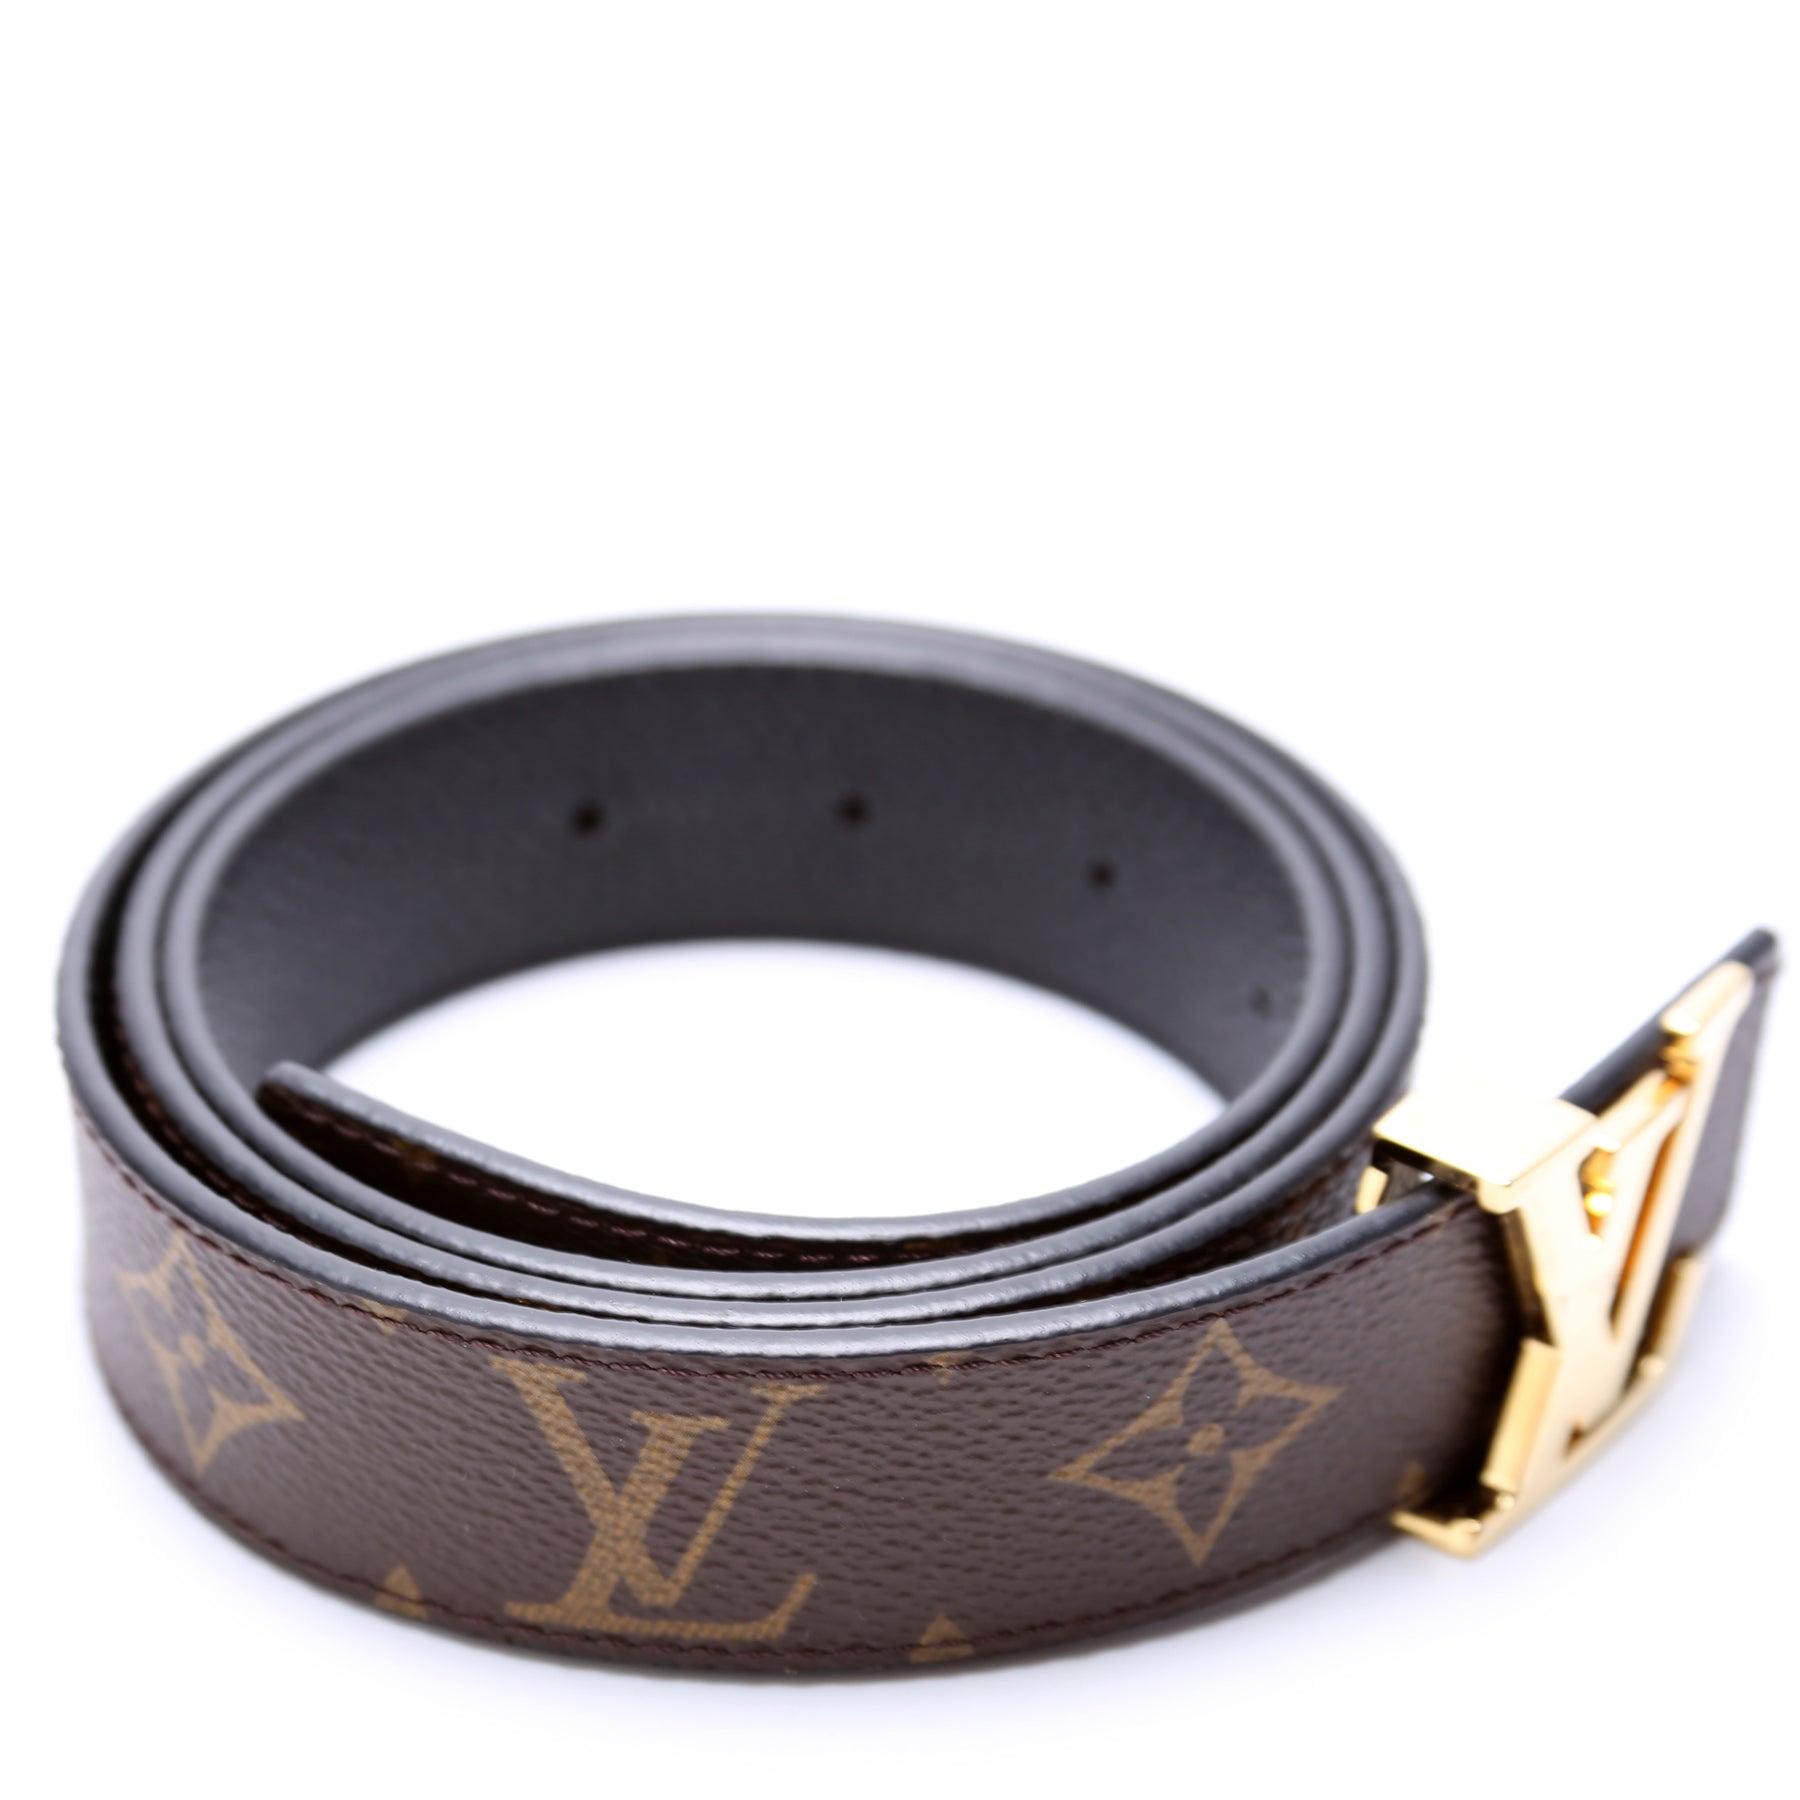 Louis Vuitton Initiales 30MM Reversible Belt, Black/Brown, Size 90